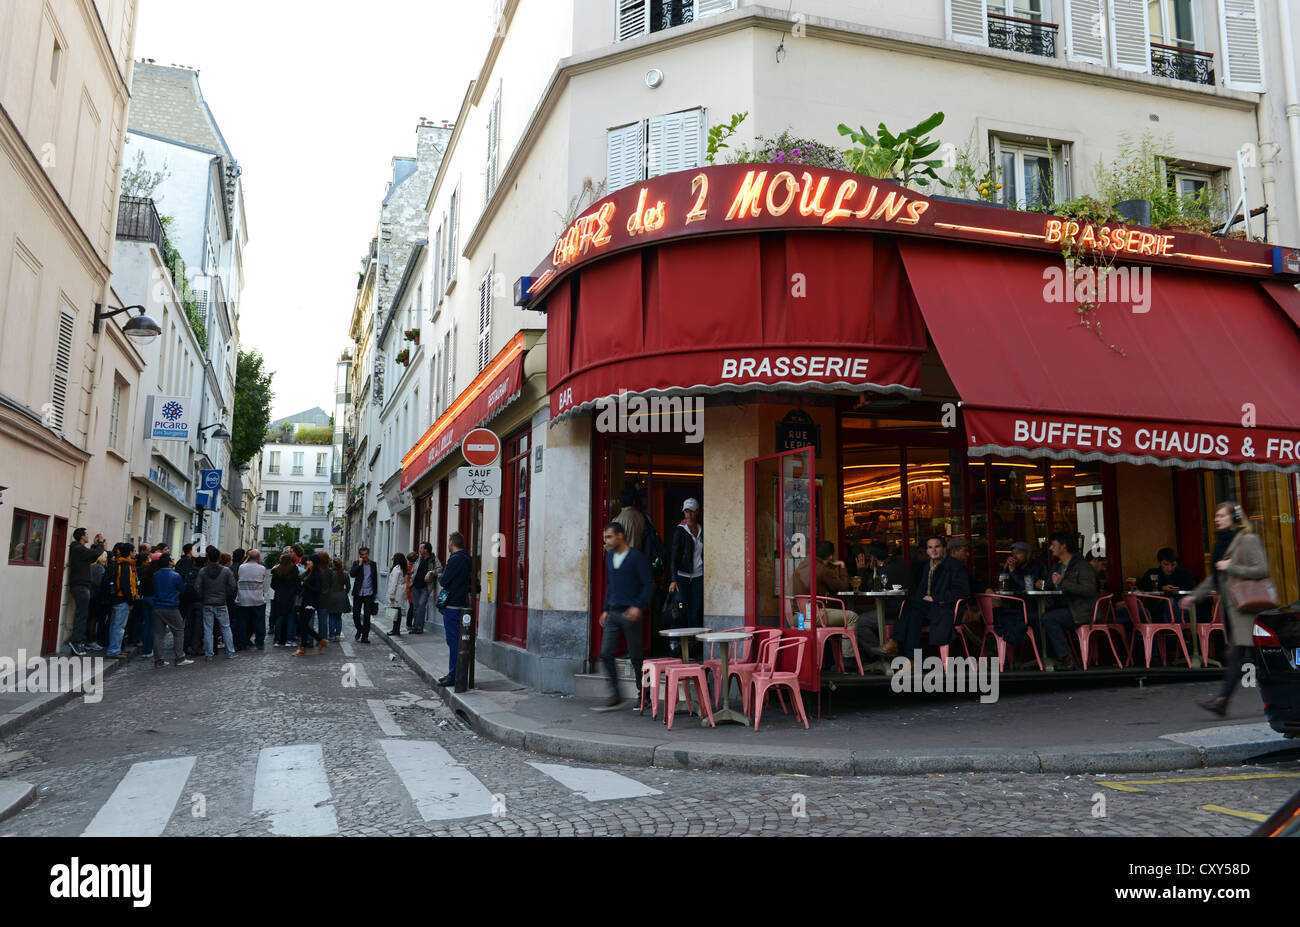 Café des Deux Moulin Parigi Francia, location del film Amelie Foto Stock